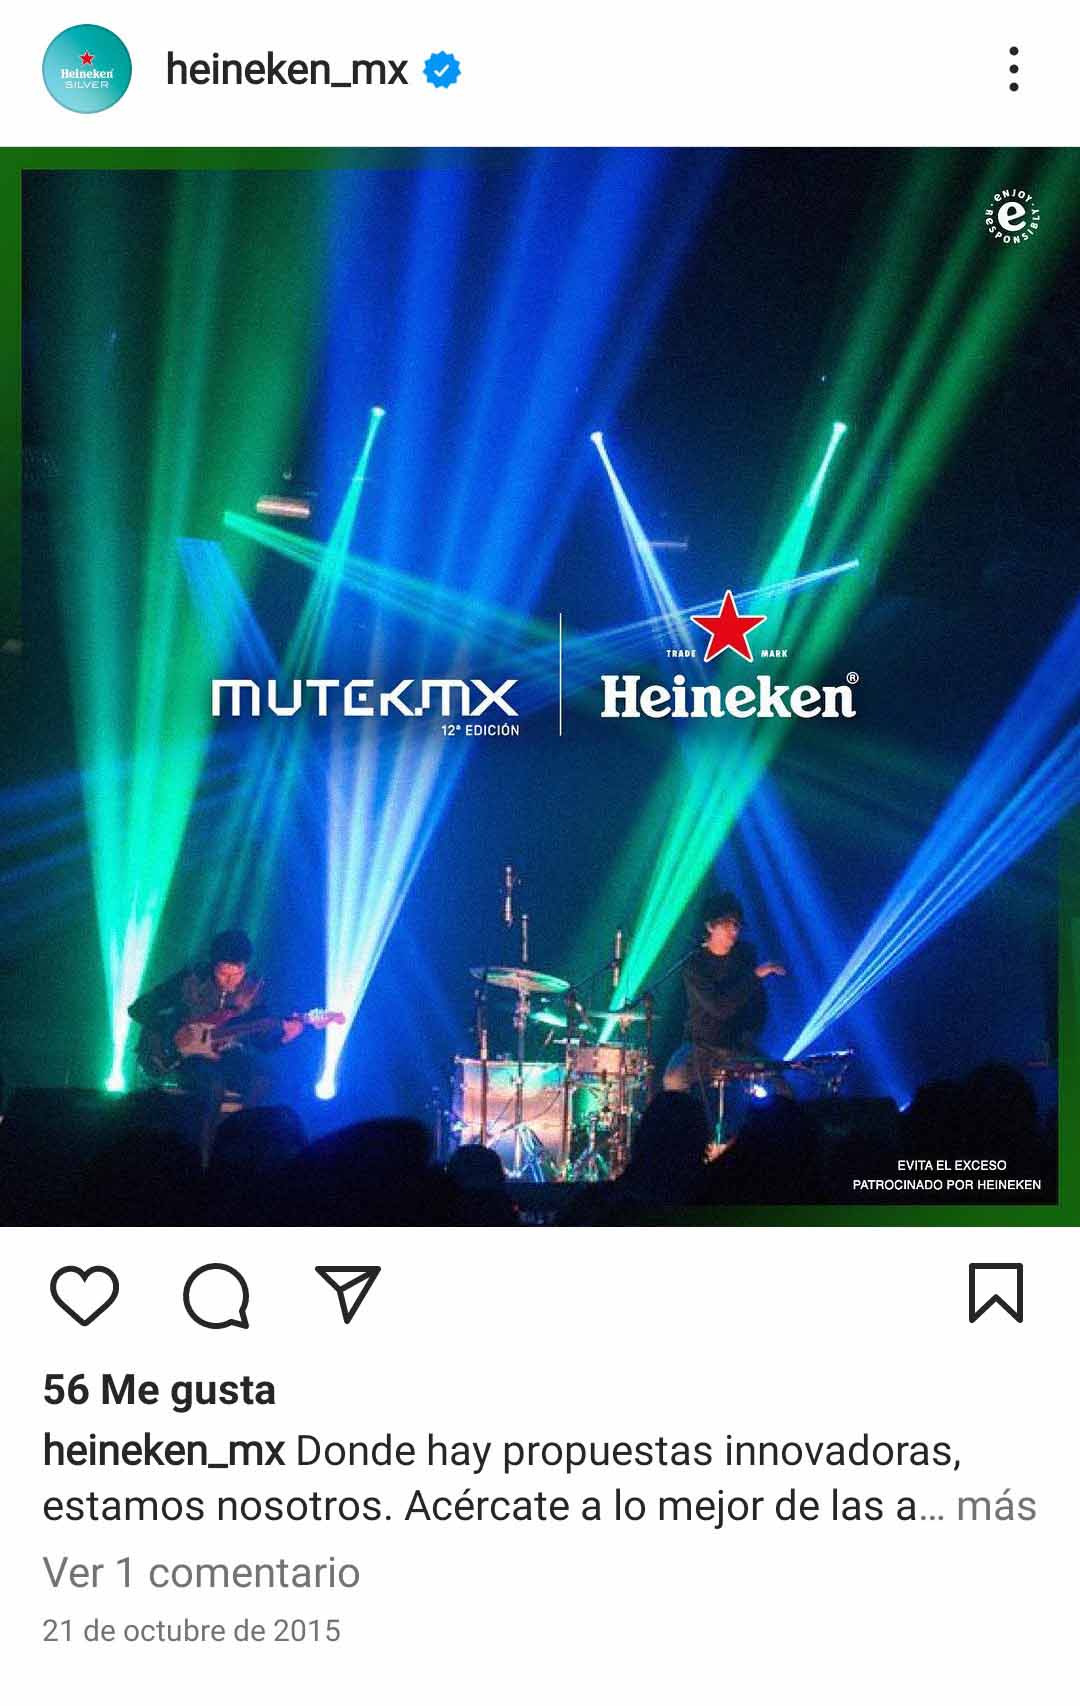 Ejemplo de segmentación de mercado de Heineken en Instagram